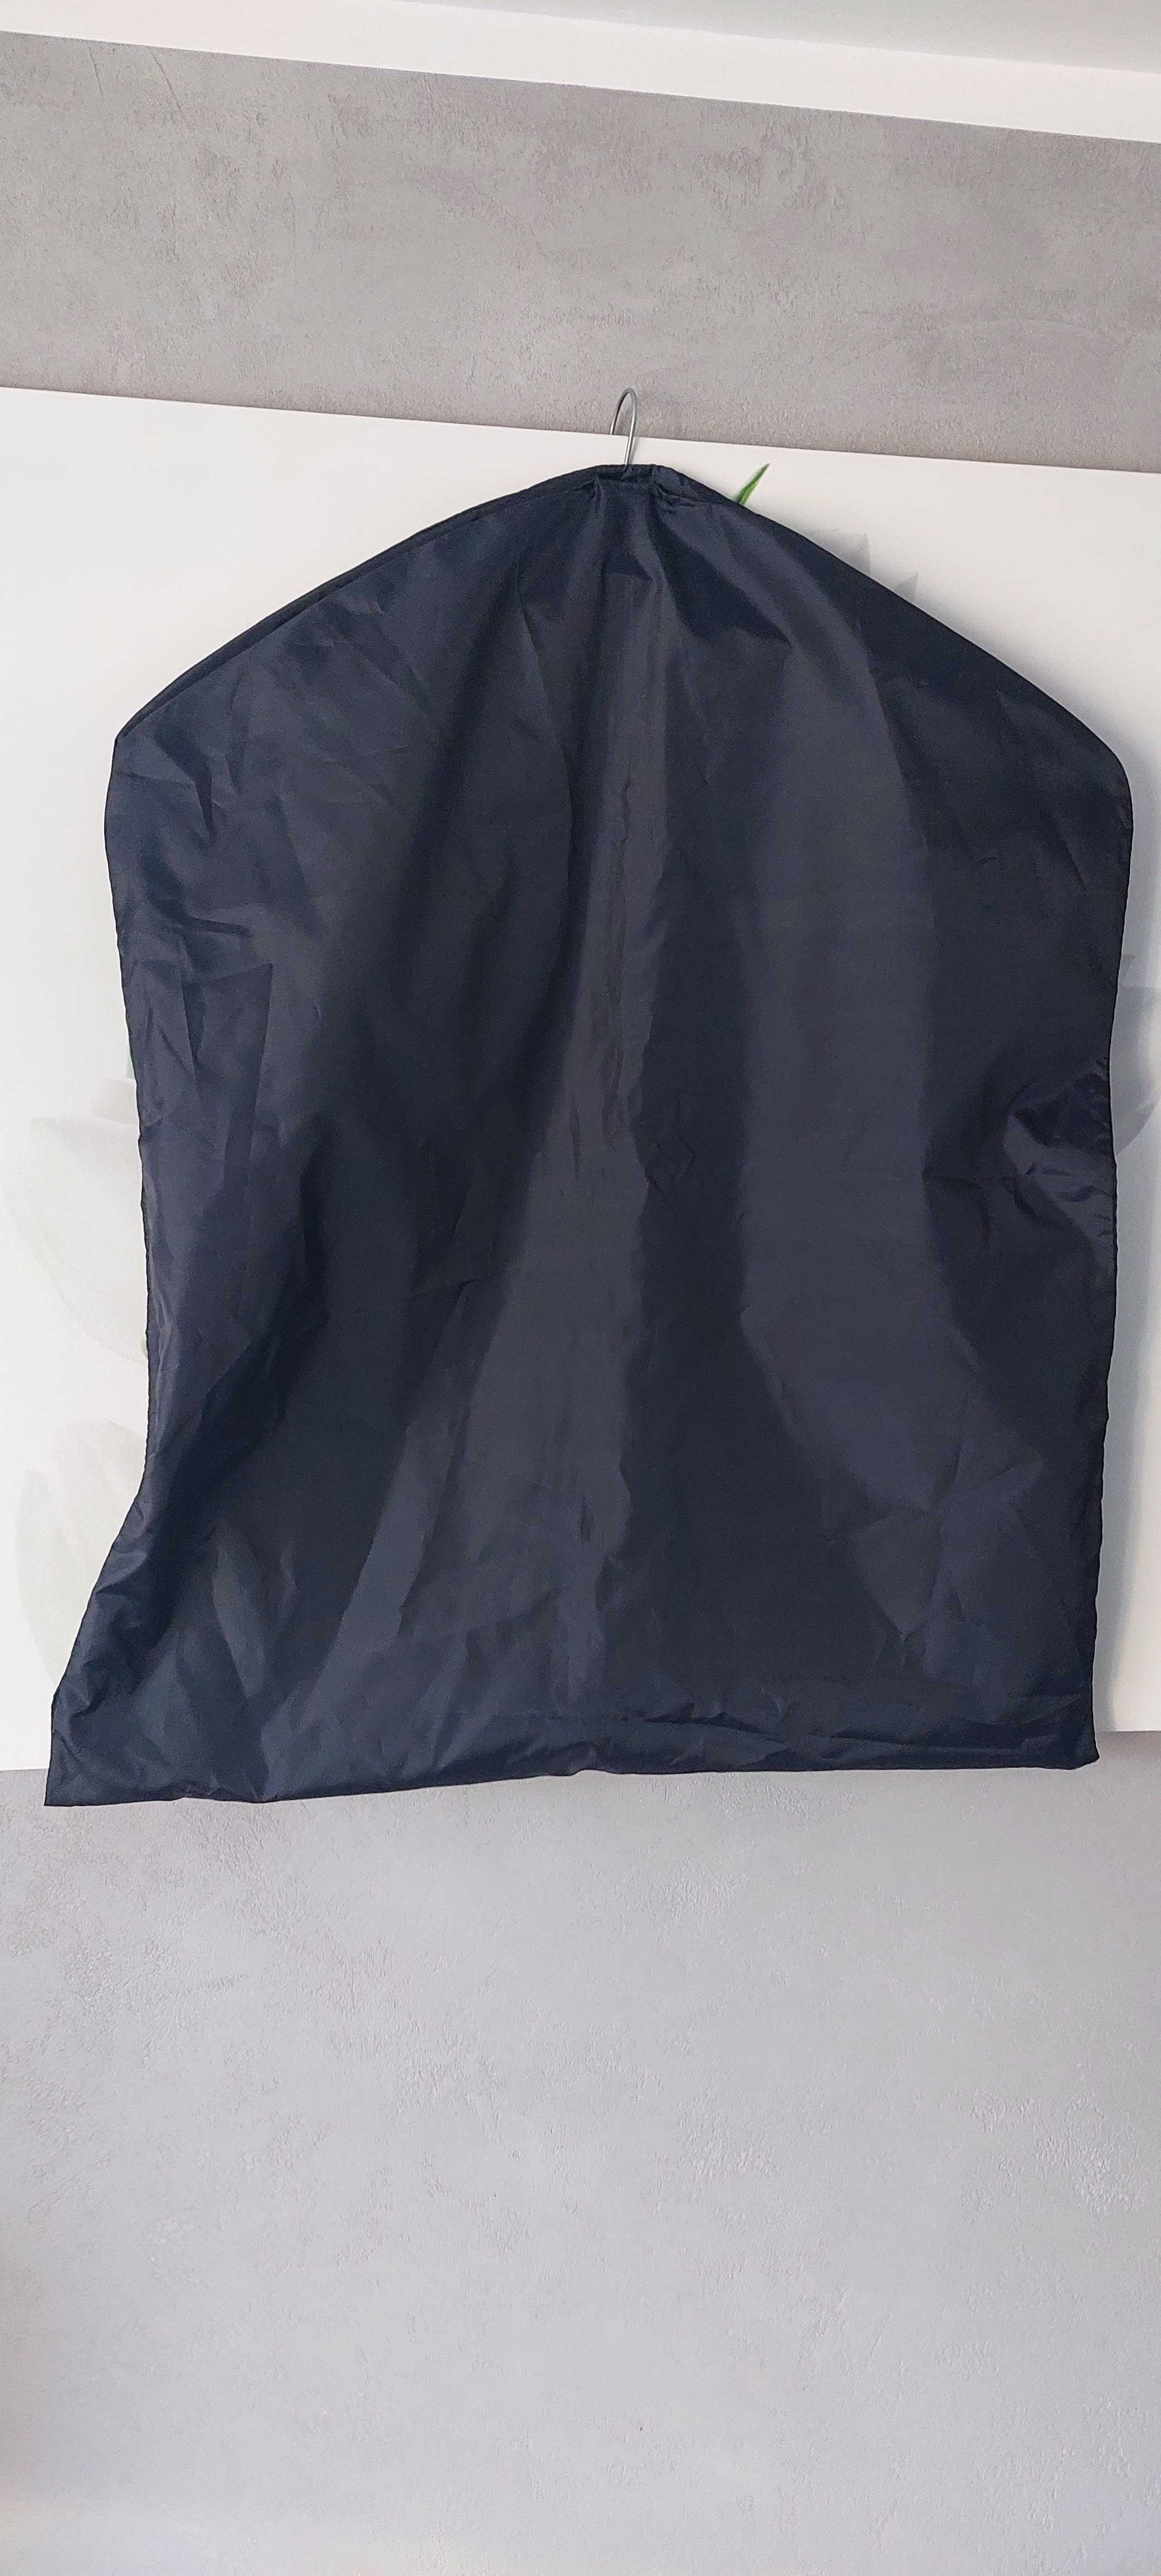 Pokrowiec na ubrania PRADA - oryginalny, czarny, wodoodporny